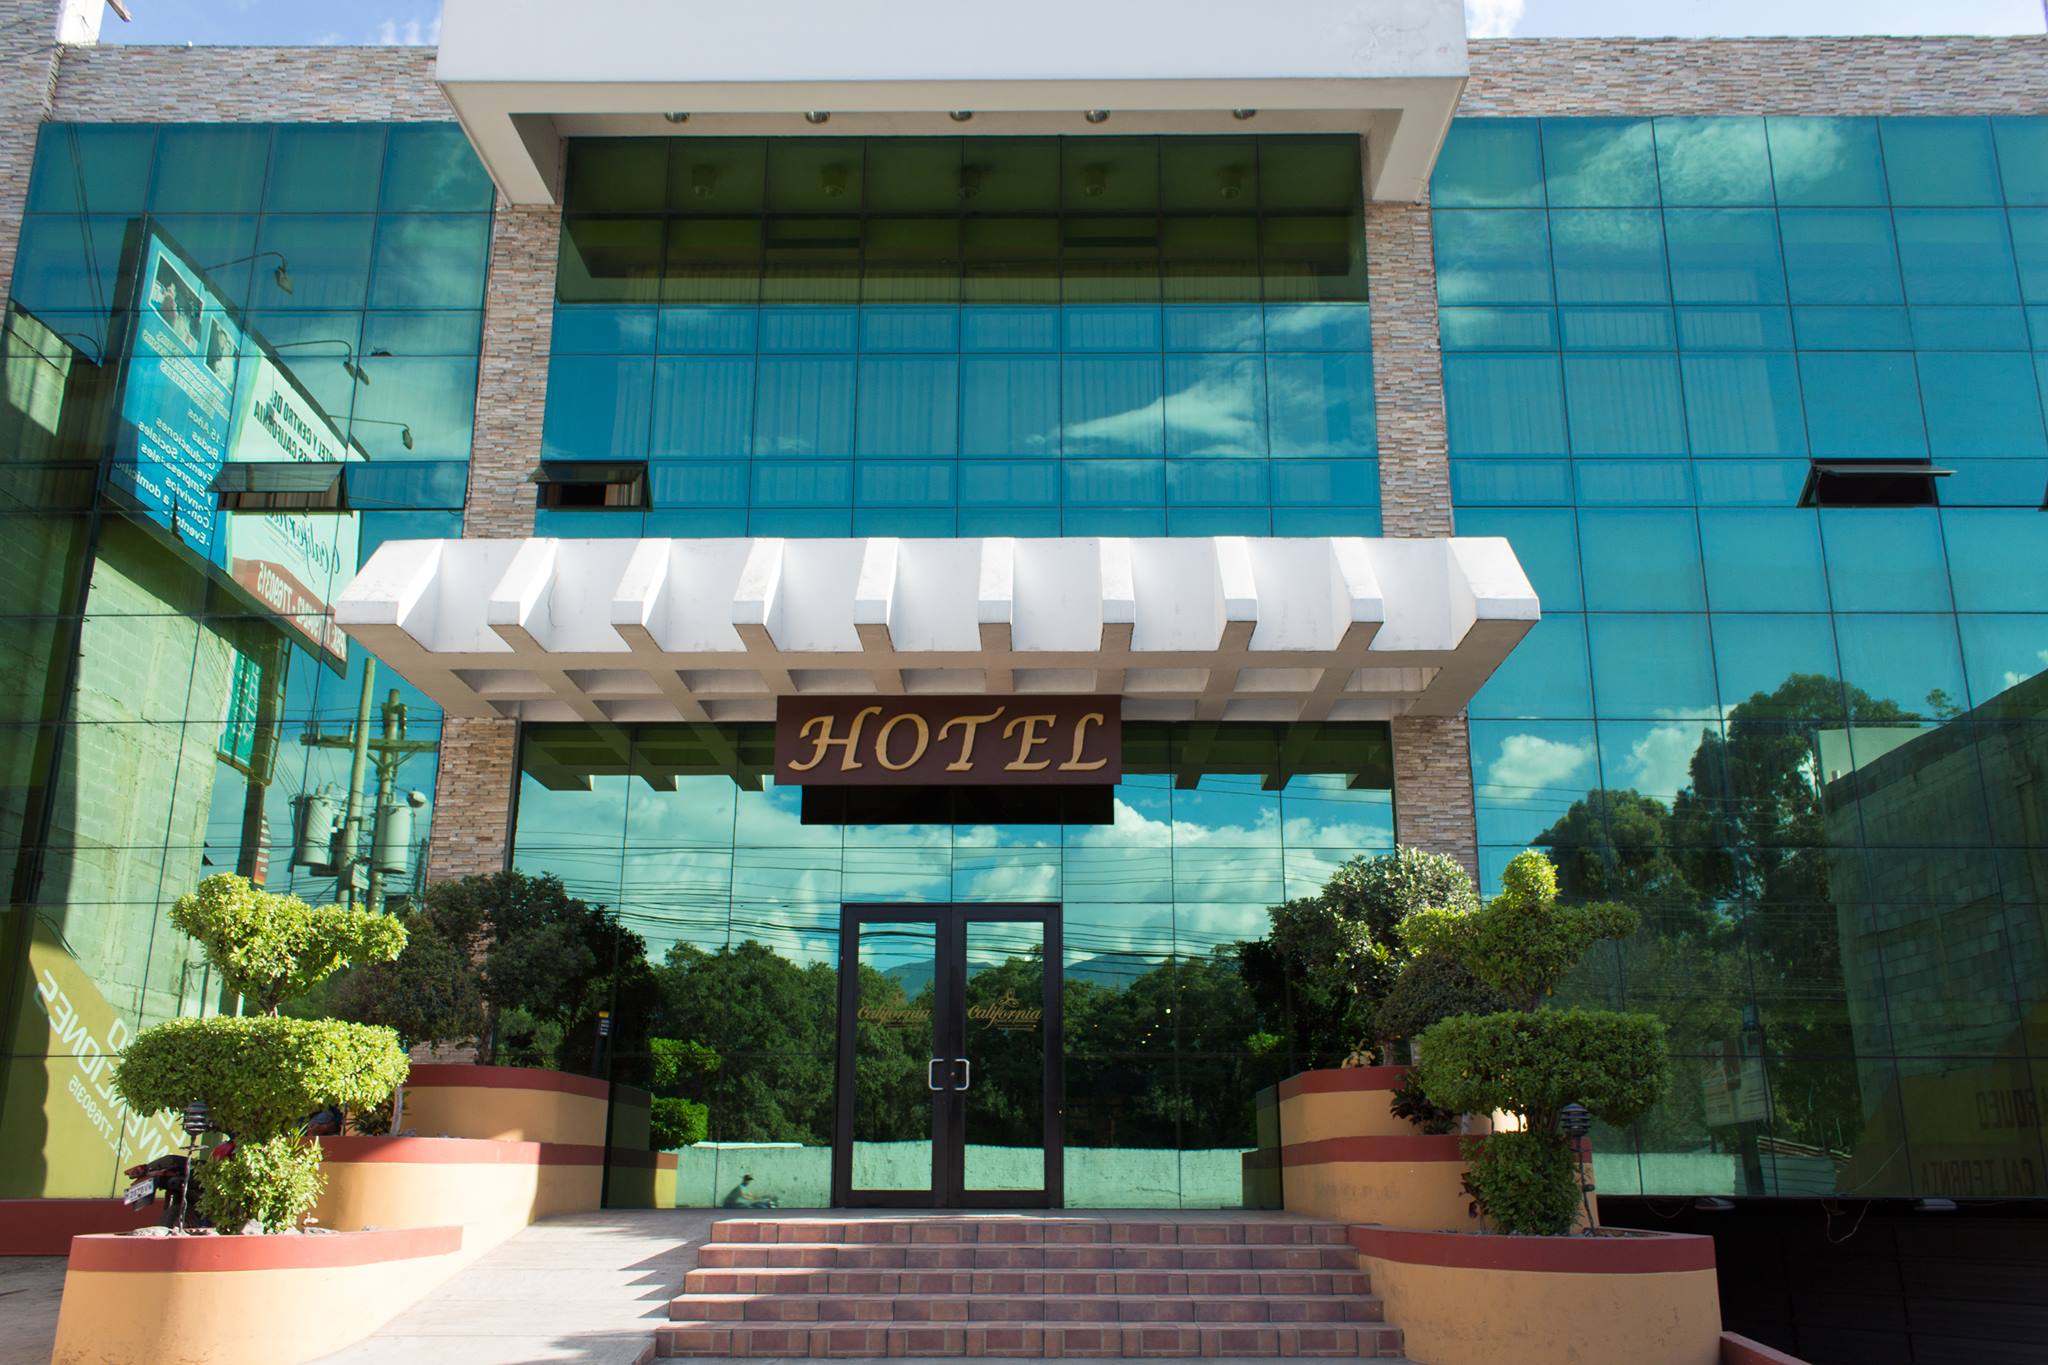 El Centro de Convenciones y hotel California está ubicado en un terreno de 1,352 metros cuadrados en uno de los puntos más importantes de Huehuetenango.